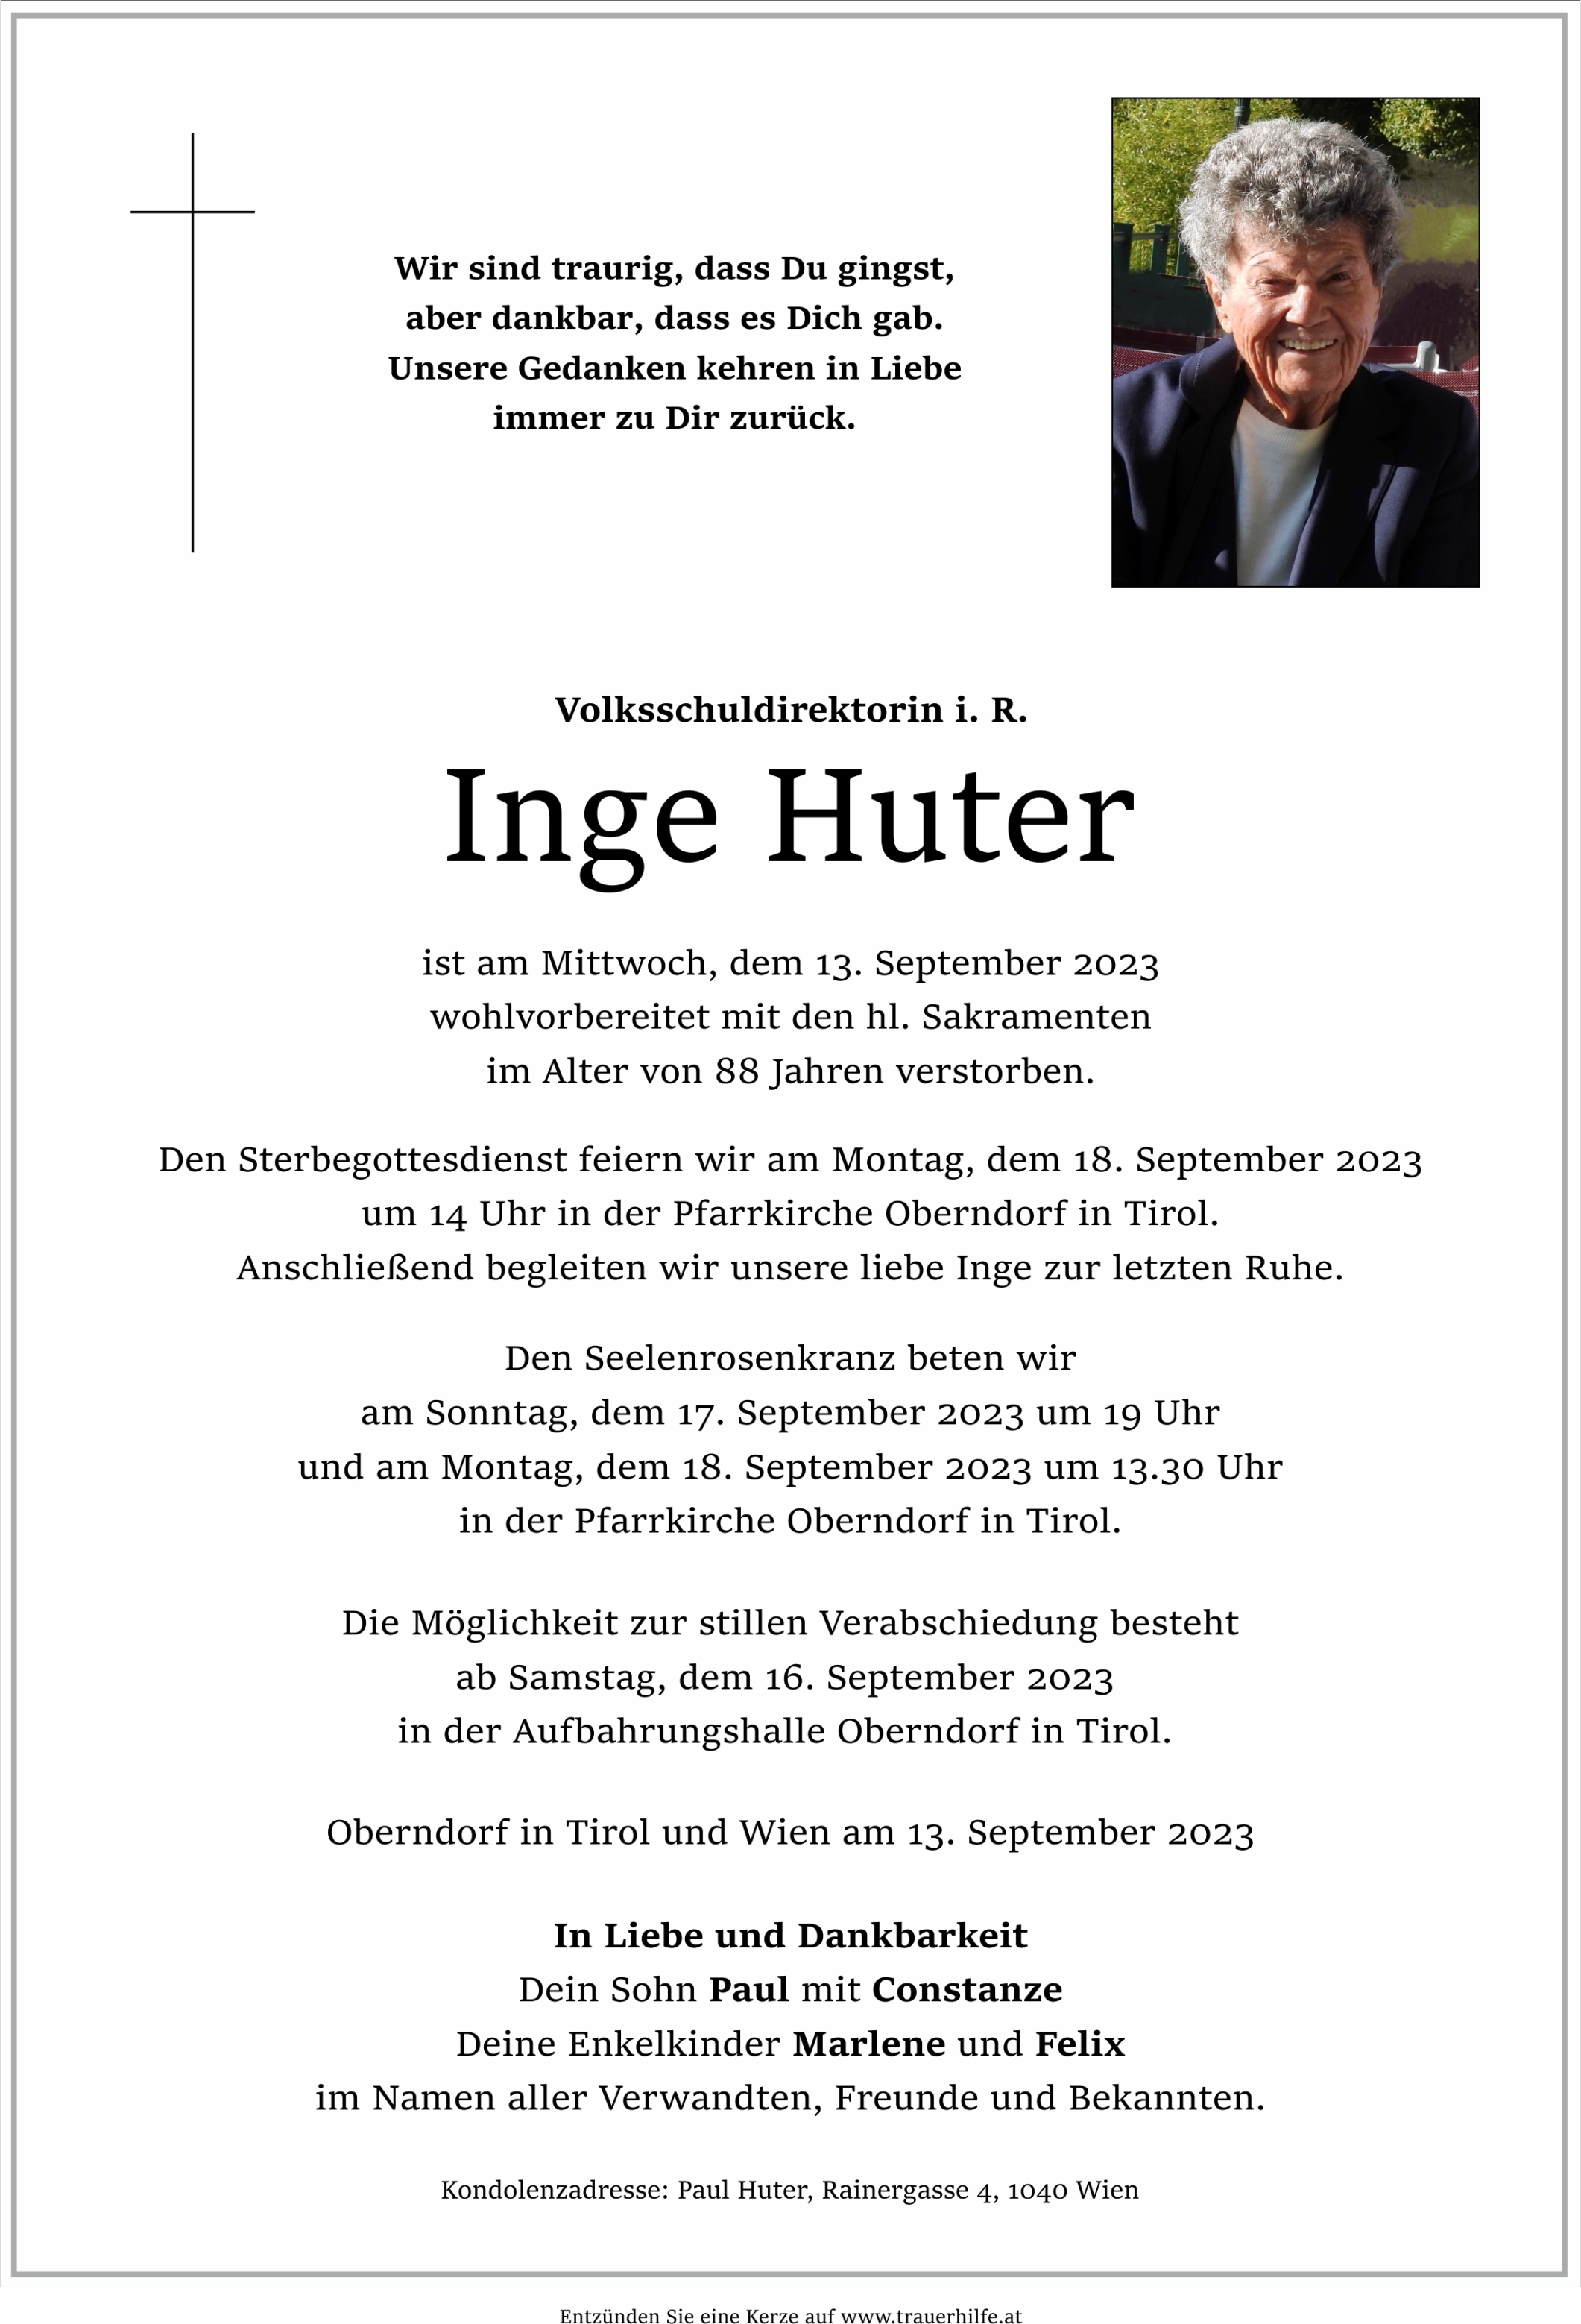 Inge Huter